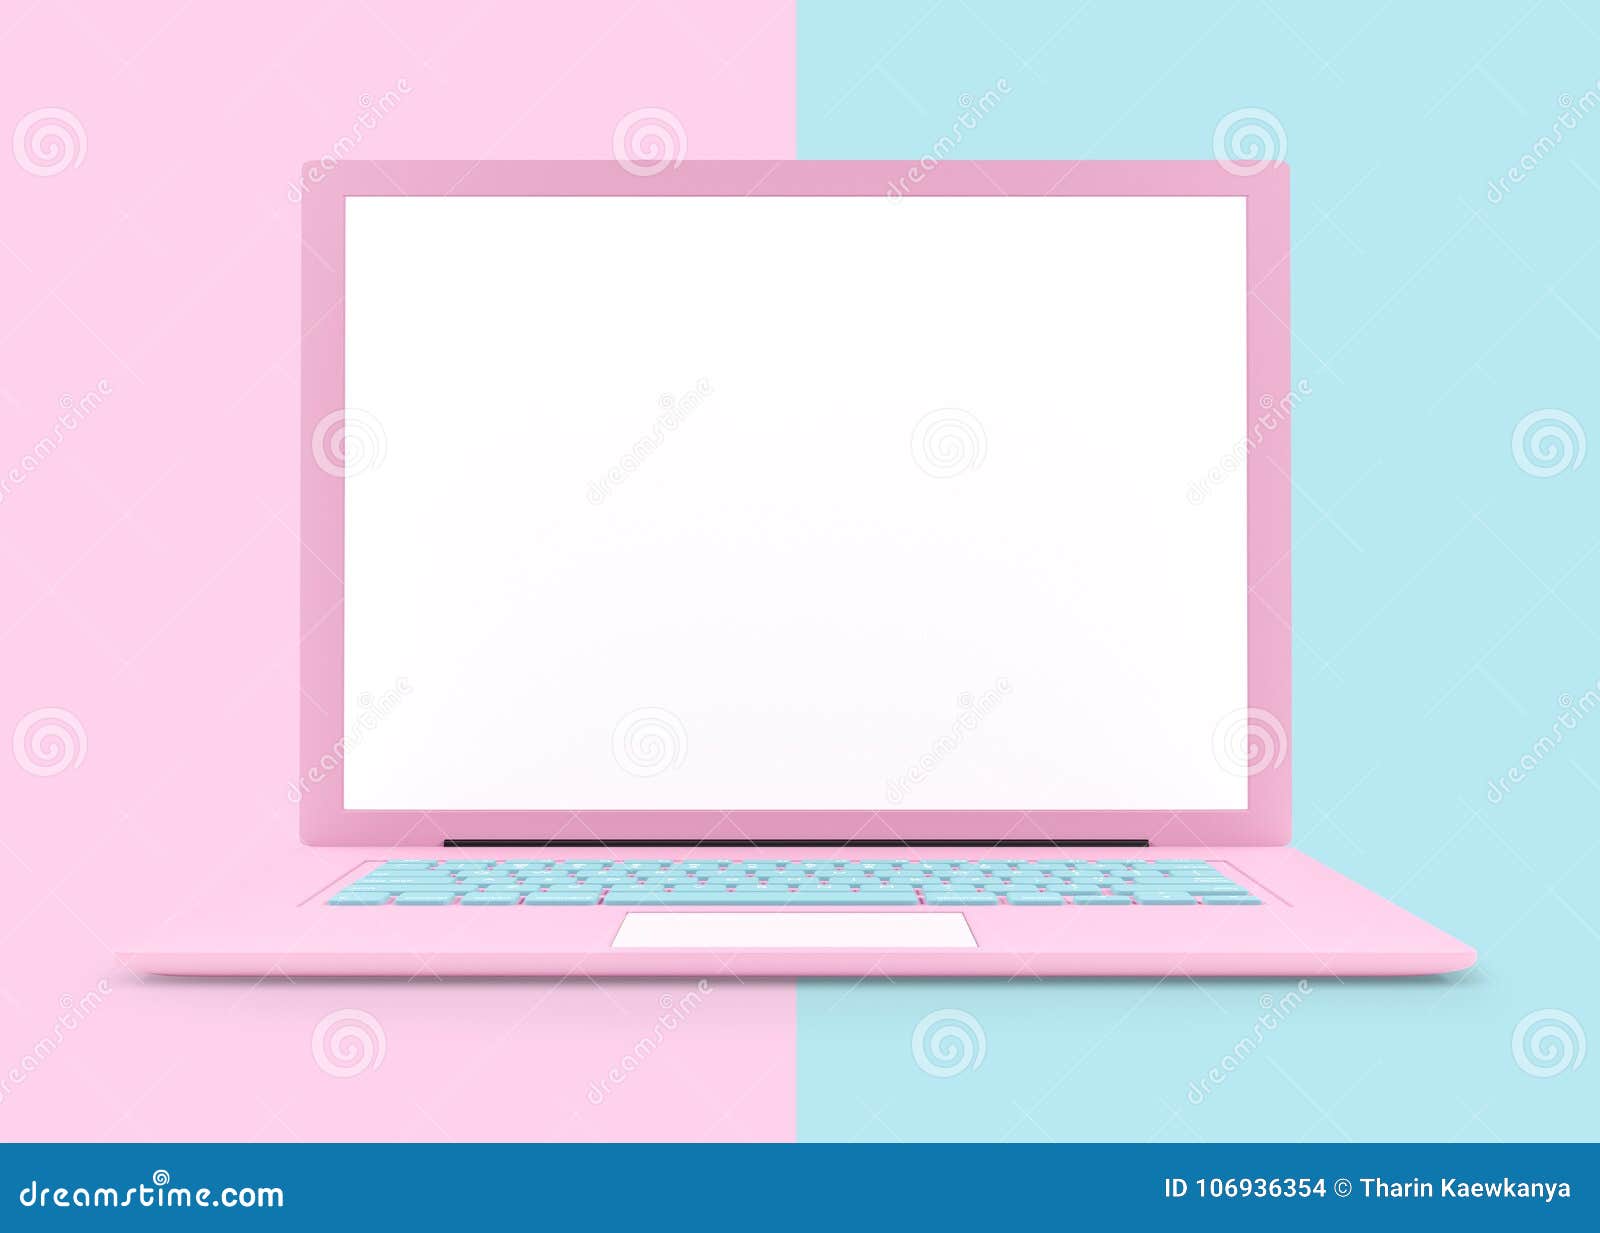 Hình nền Laptop có họa tiết vẽ tay làm chiếc máy tính của bạn thêm nổi bật giữa đám đông. Với hình nền Laptop màu hồng tuyệt đẹp này, bạn sẽ có một chiếc máy tính dễ thương và cá tính hơn. Hãy nhanh chân xem ngay nhé! 